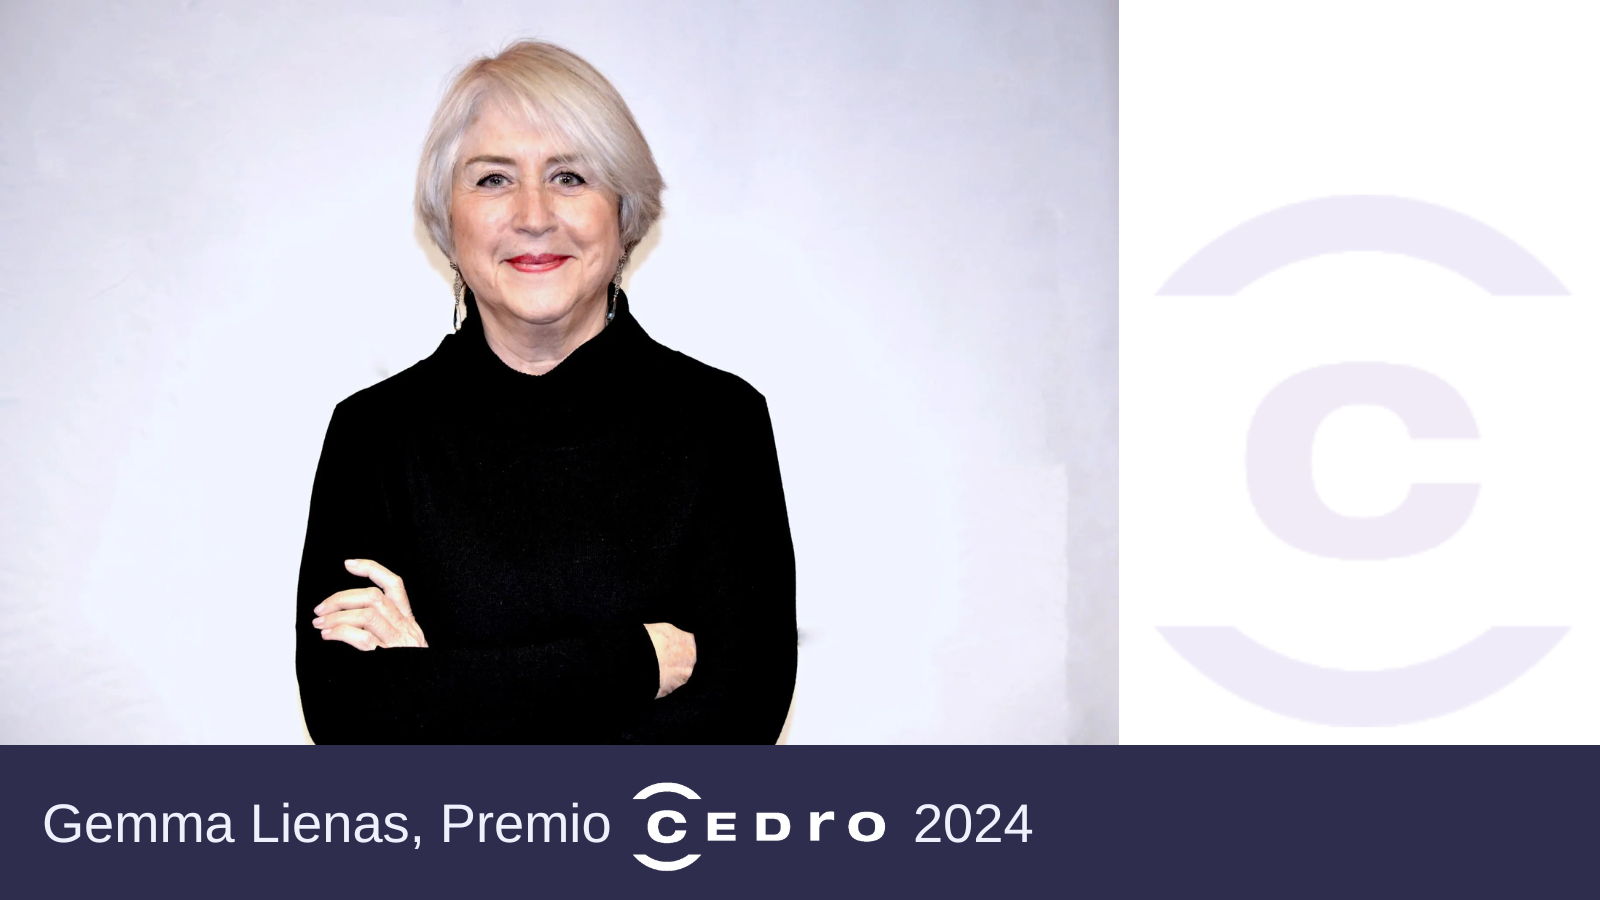 “La escritora Gemma Lienas, Premio CEDRO 2024”. Artículo publicado por CEDRO